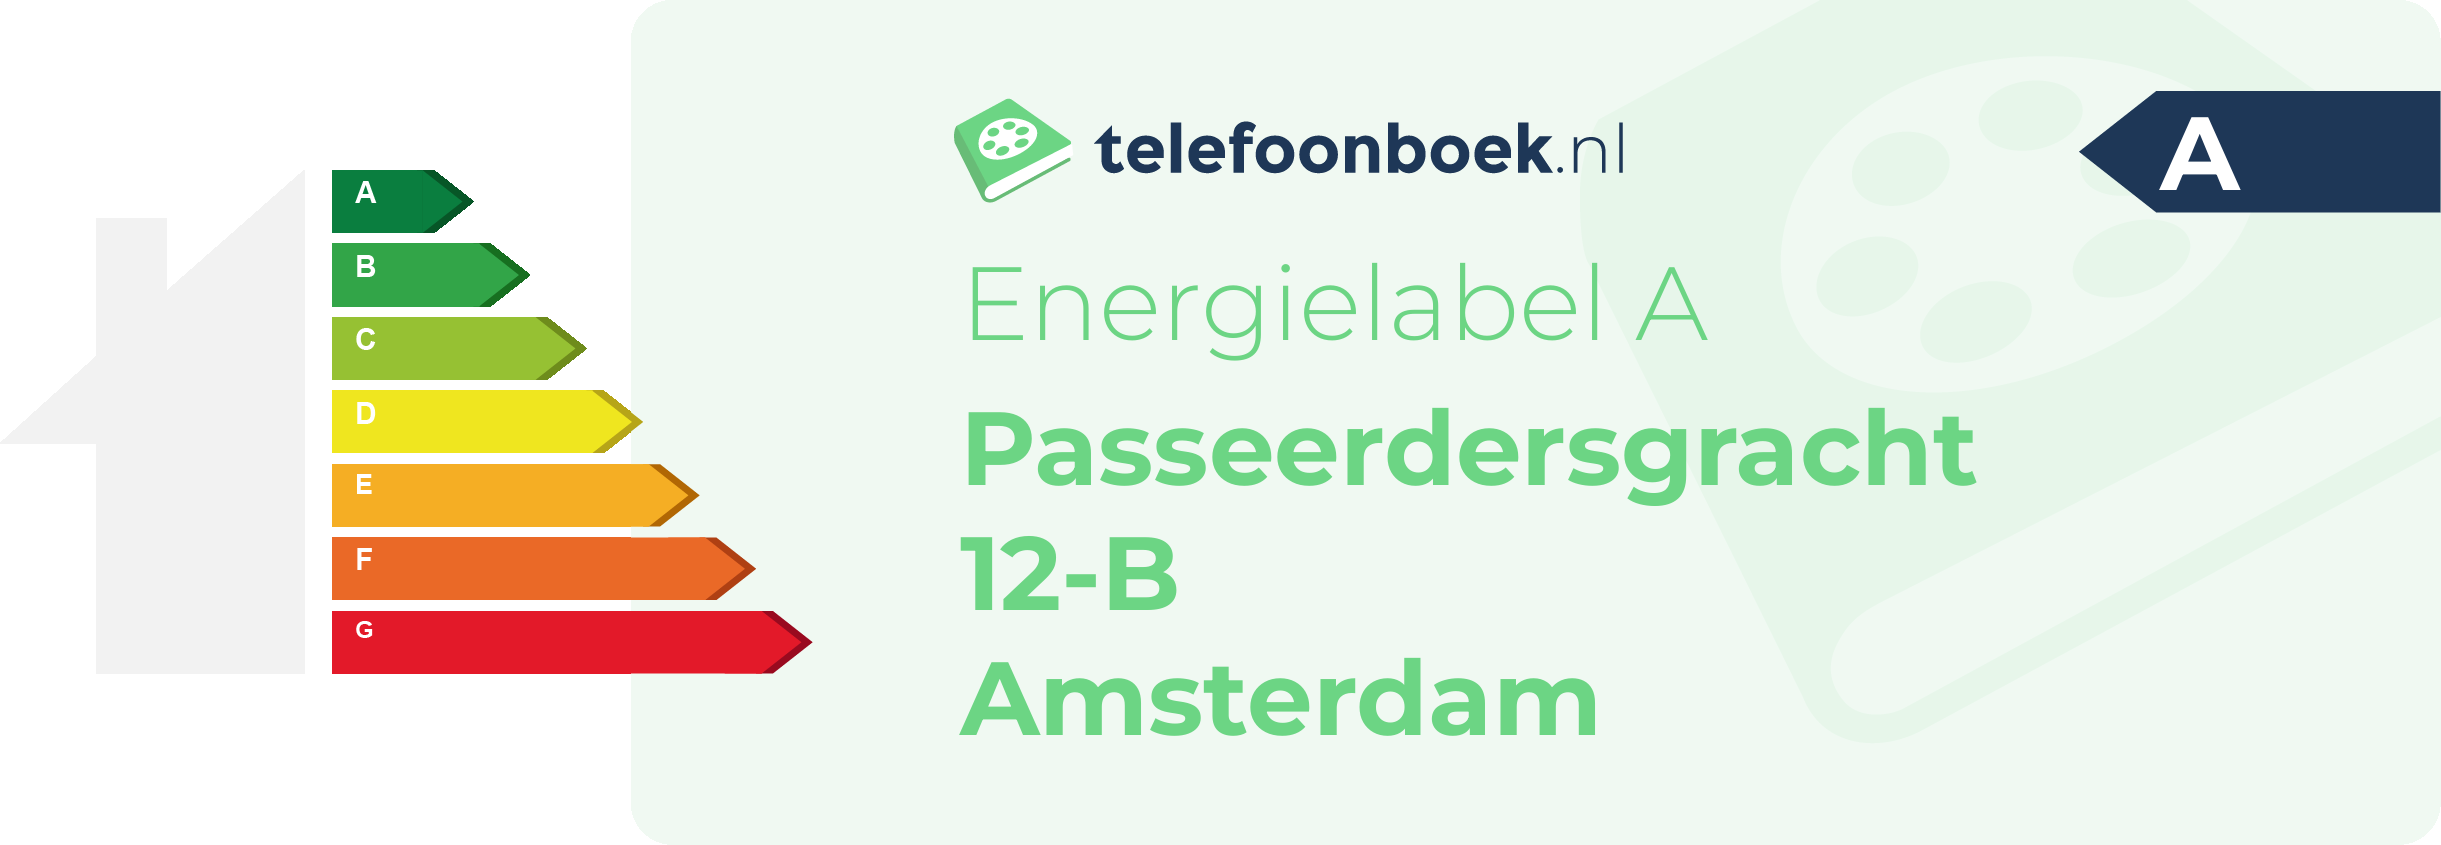 Energielabel Passeerdersgracht 12-B Amsterdam